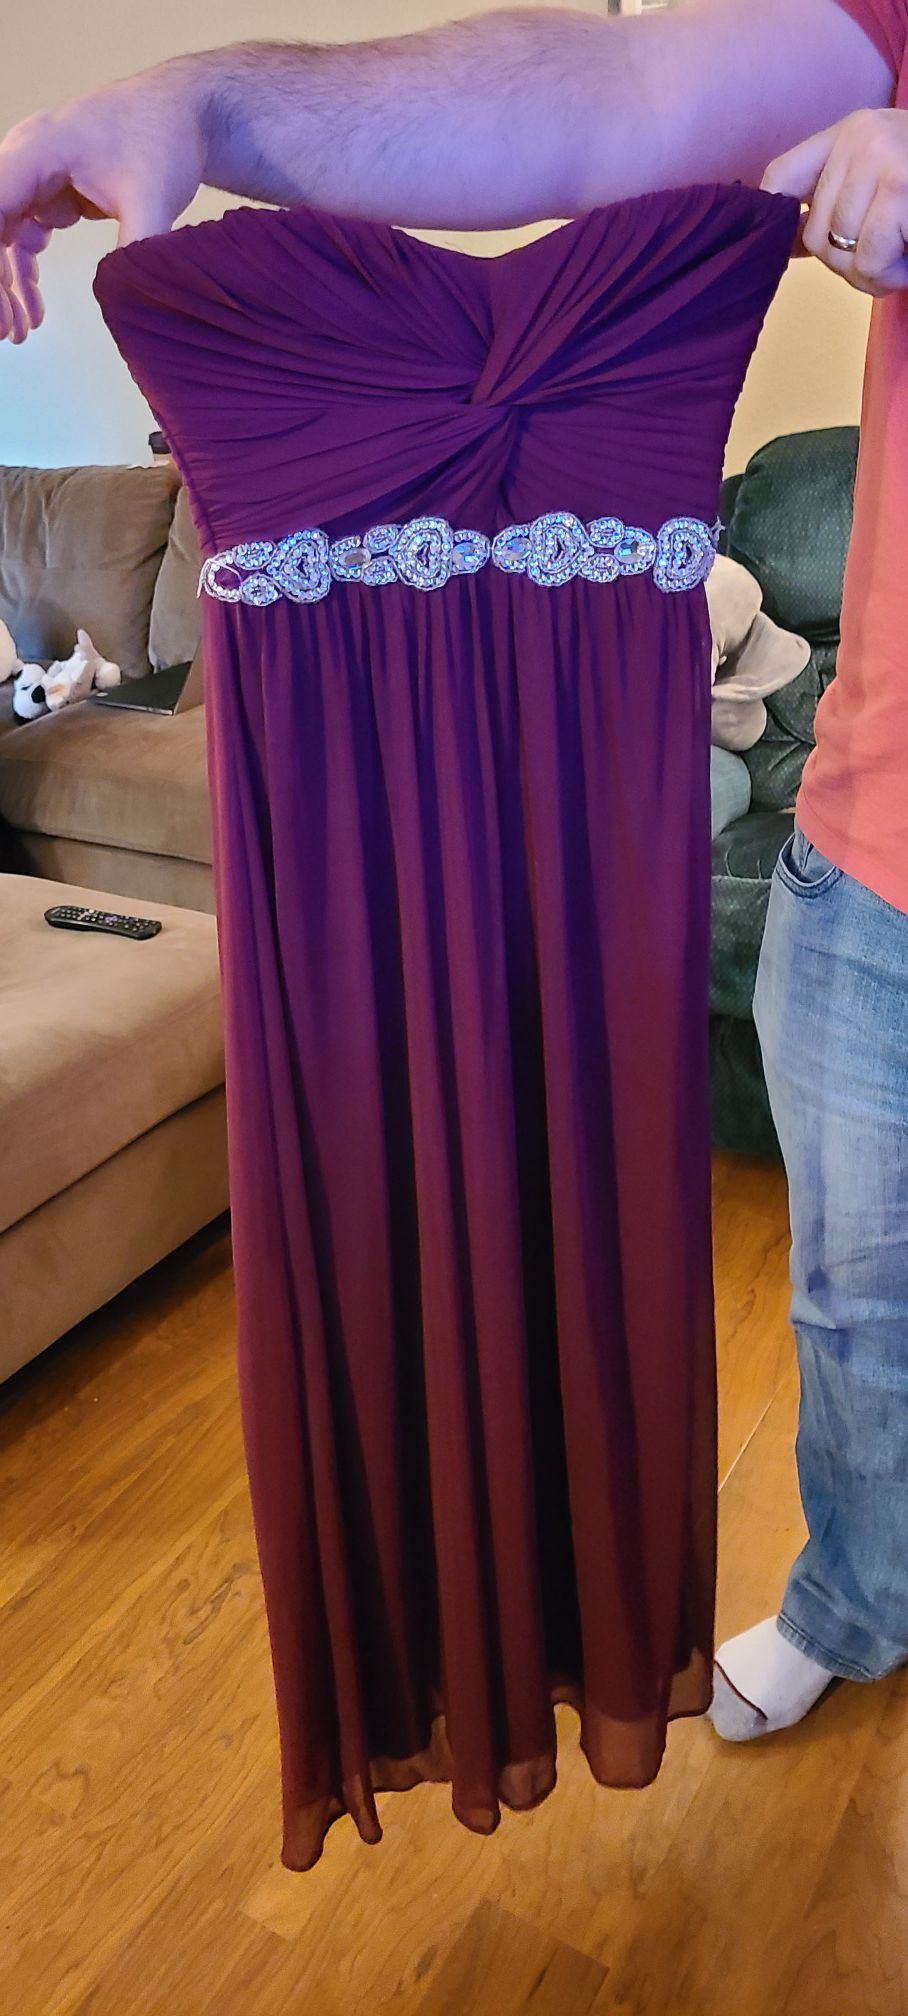 Maroon prom dress - size 3